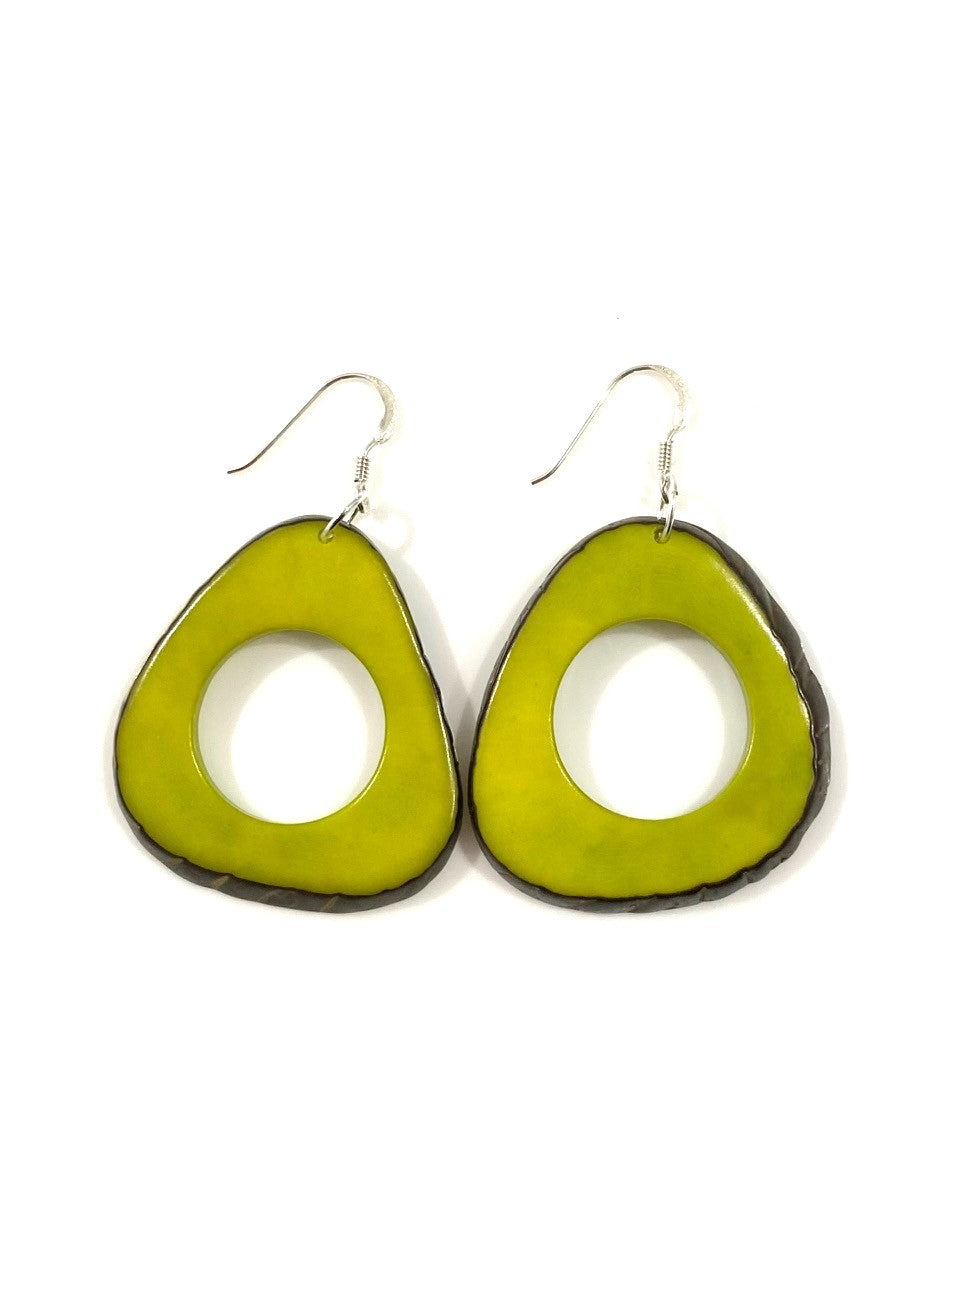 Donut earrings - Green Pistachio